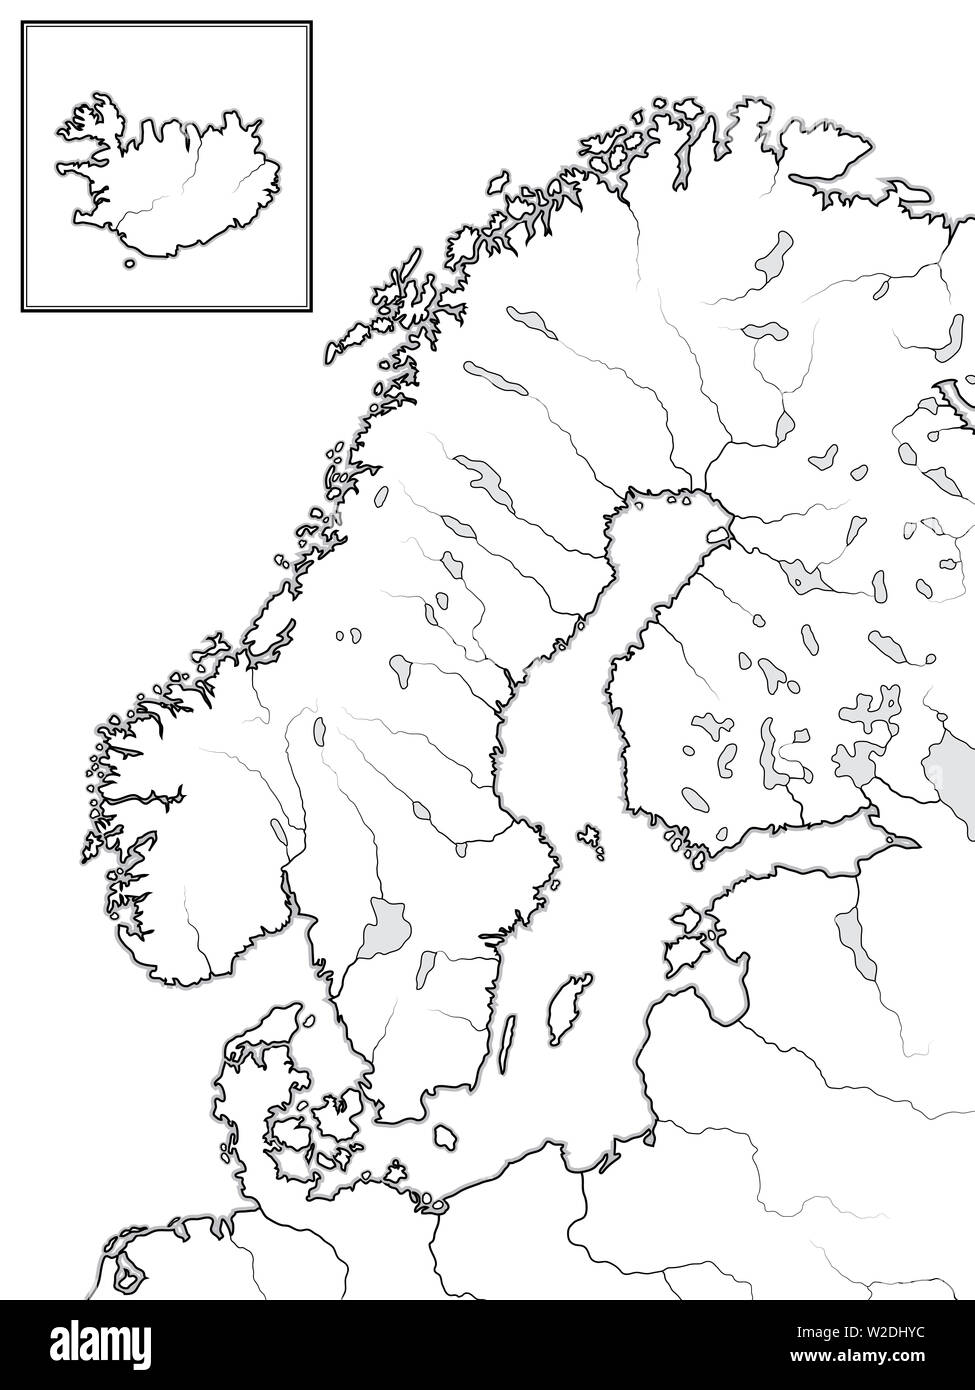 Karte der skandinavischen Länder: Skandinavien, Schweden, Norwegen, Finnland, Lappland, Karelien, Baltia, Dänemark und Island [Einfügen]. Geographische karte. Stockfoto